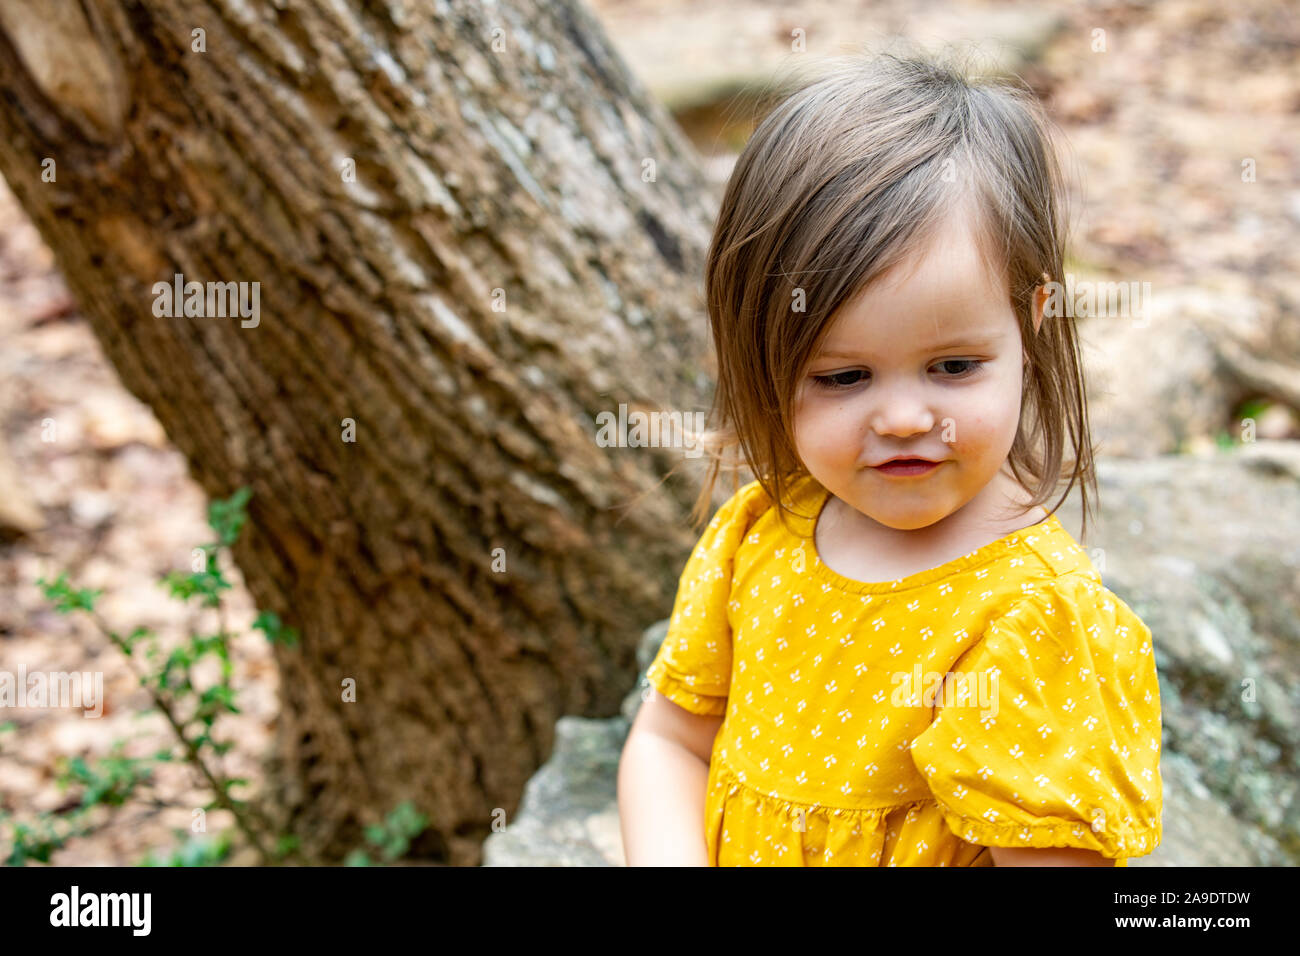 Kleinkind auf Baum sitzend, die mit dem glücklich ist, was sie entdeckt hat Stockfoto